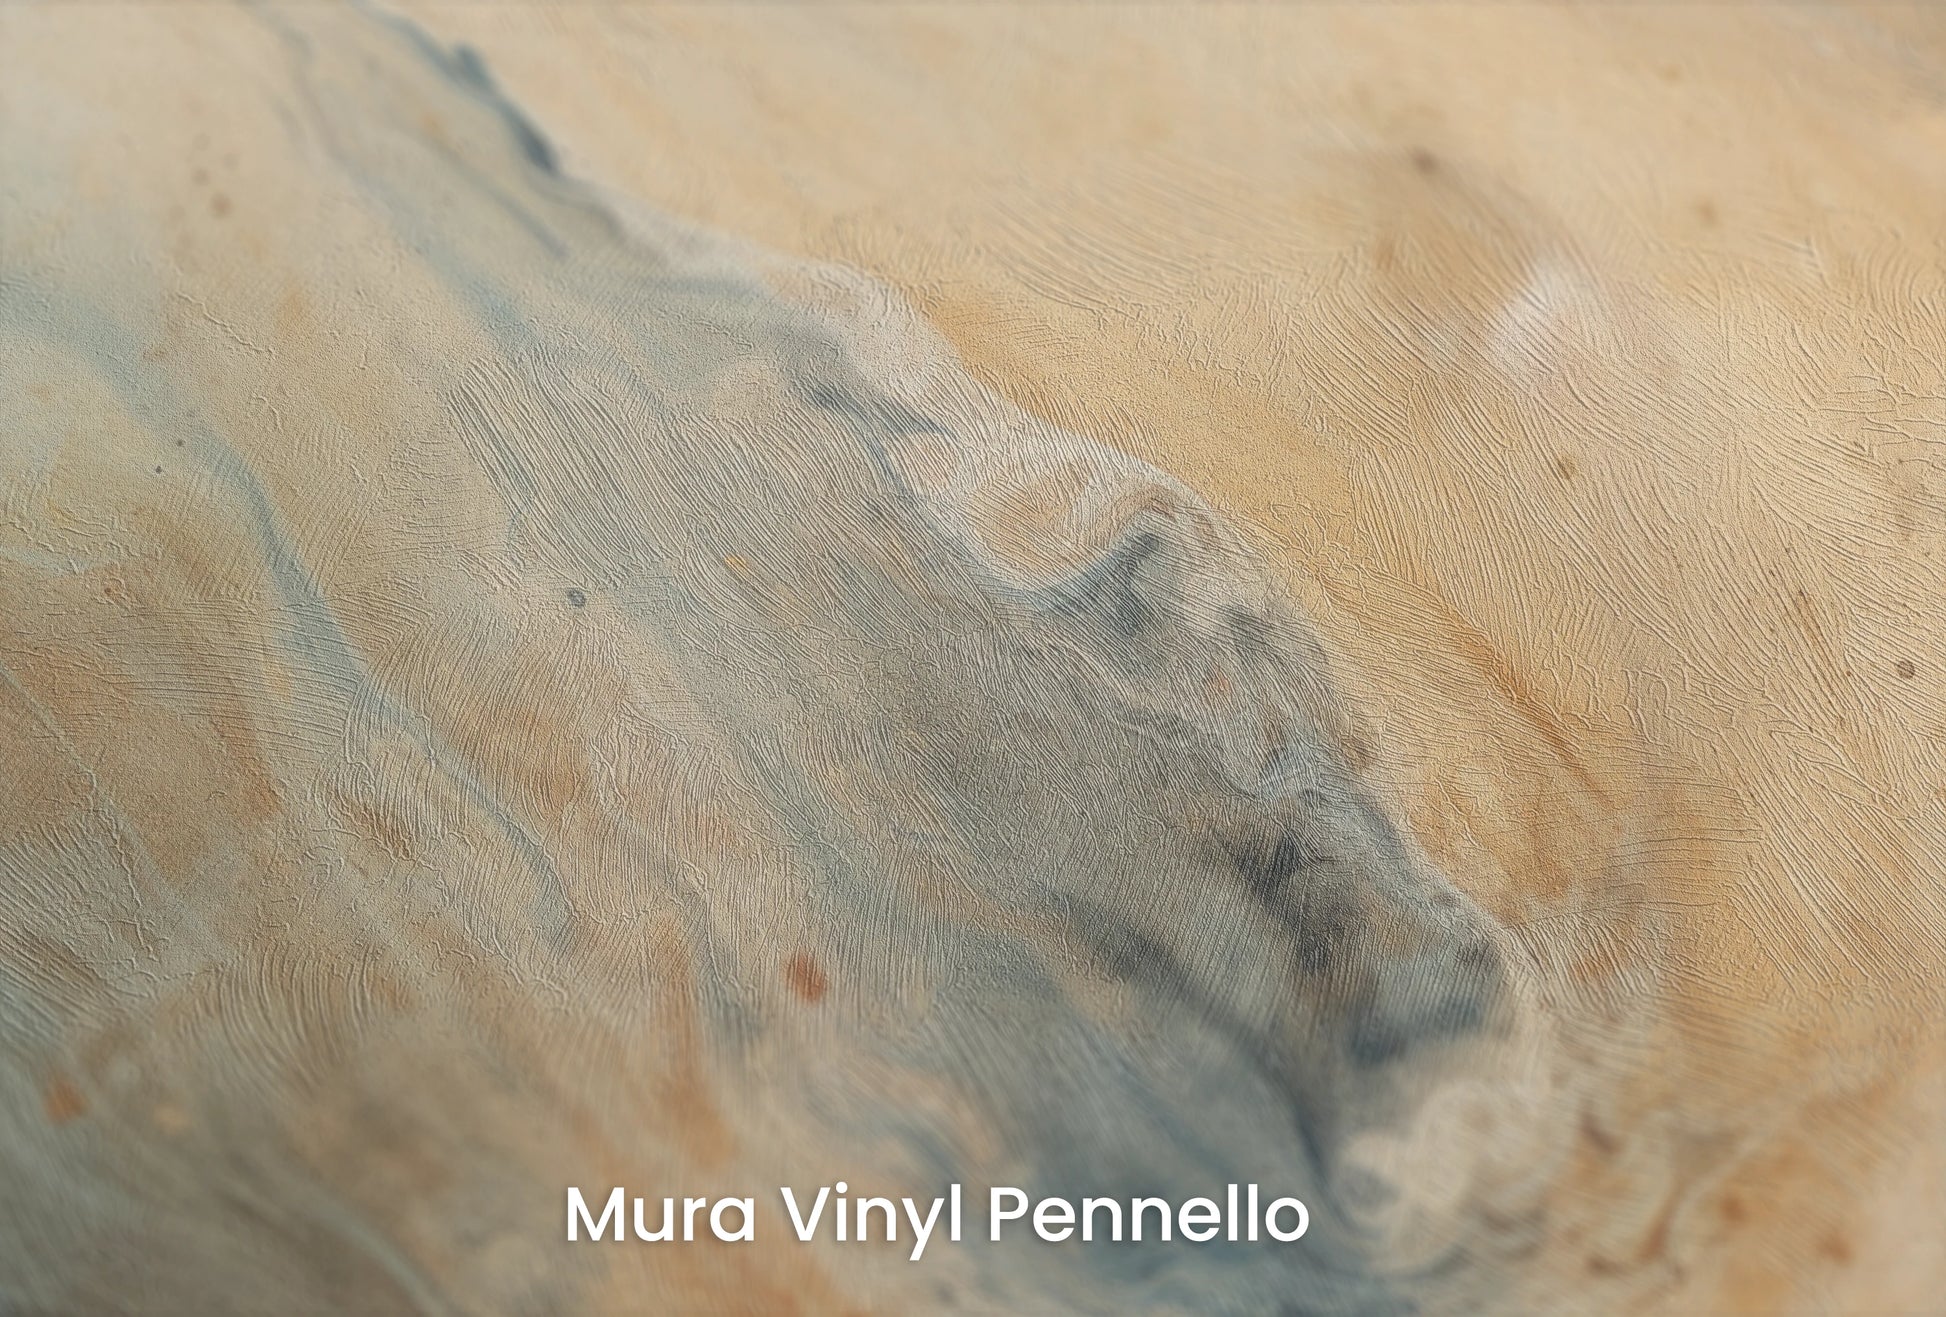 Zbliżenie na artystyczną fototapetę o nazwie Jupiter's Storm #2 na podłożu Mura Vinyl Pennello - faktura pociągnięć pędzla malarskiego.